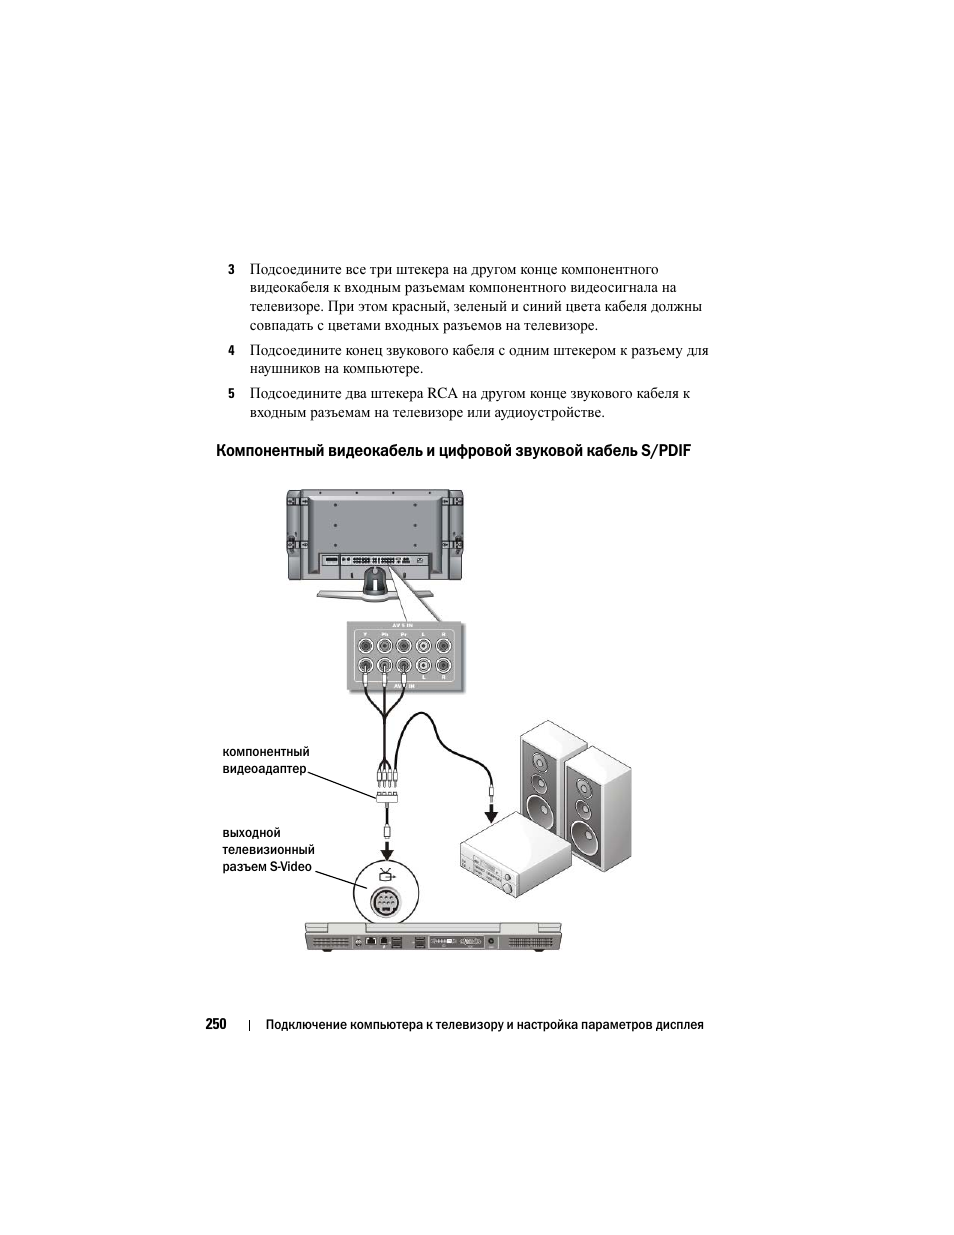 Инструкция по эксплуатации Dell Inspiron 560 | Страница 250 / 384